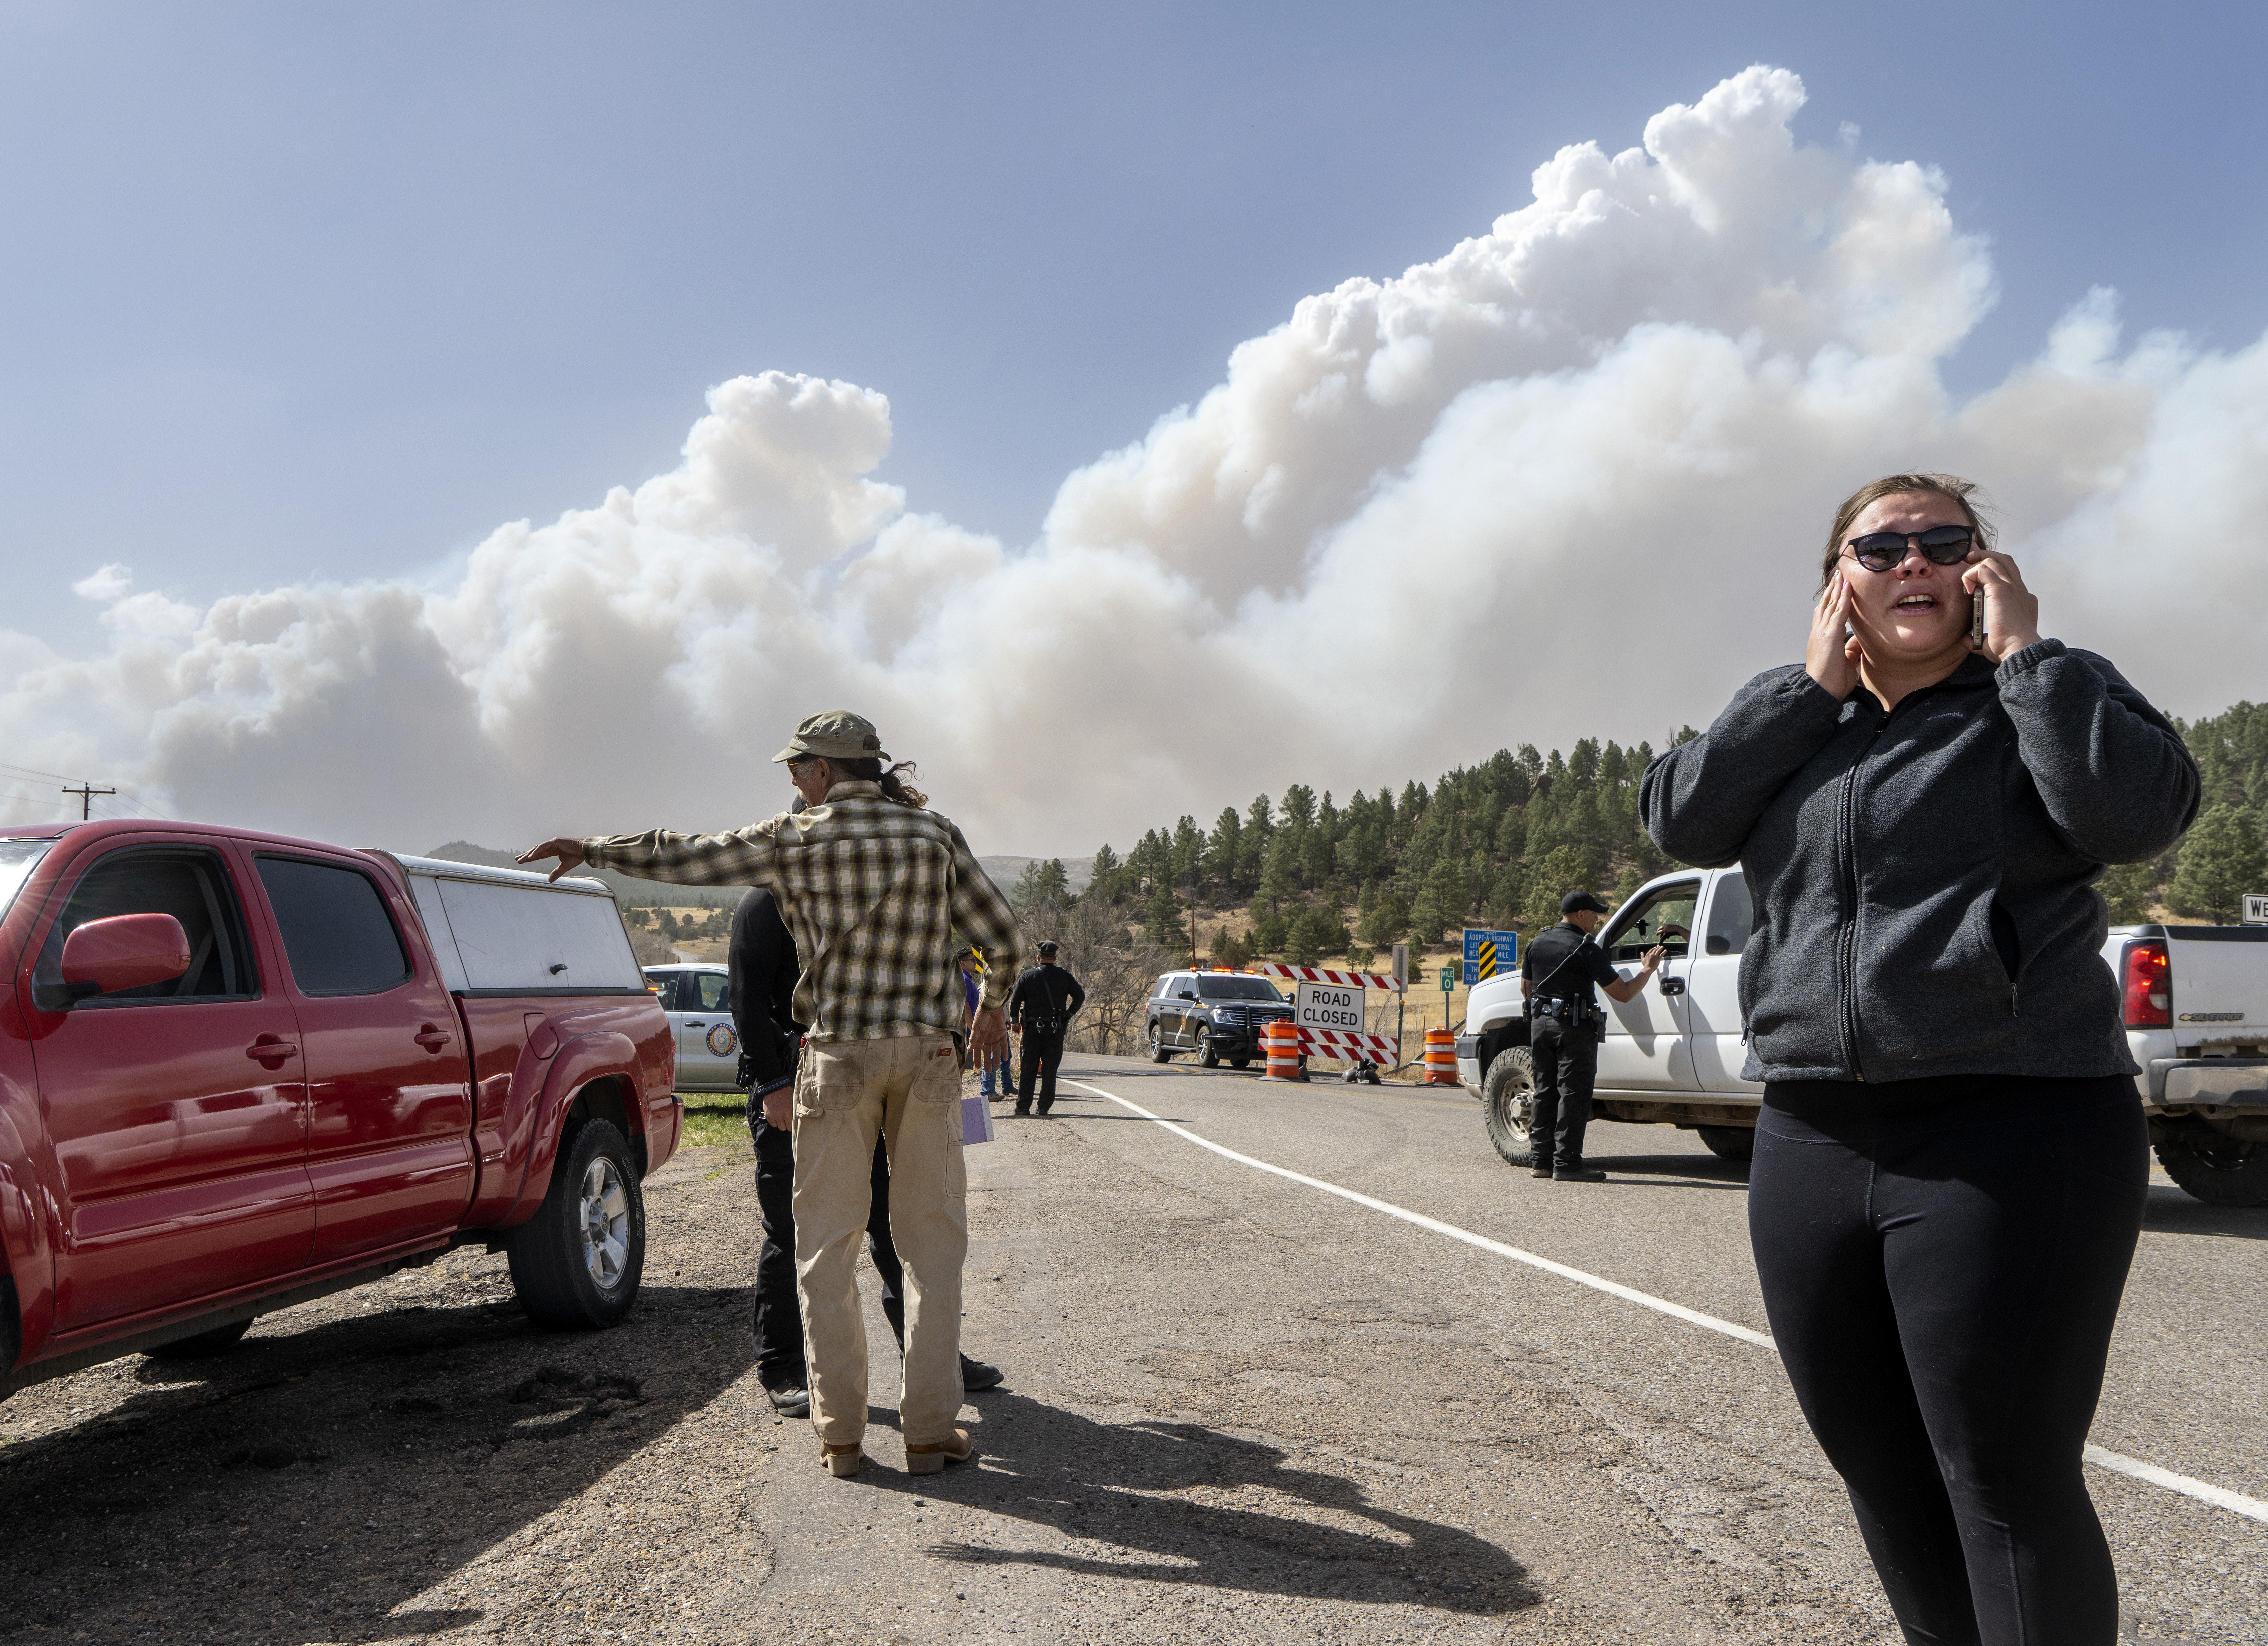 People flee wildfires